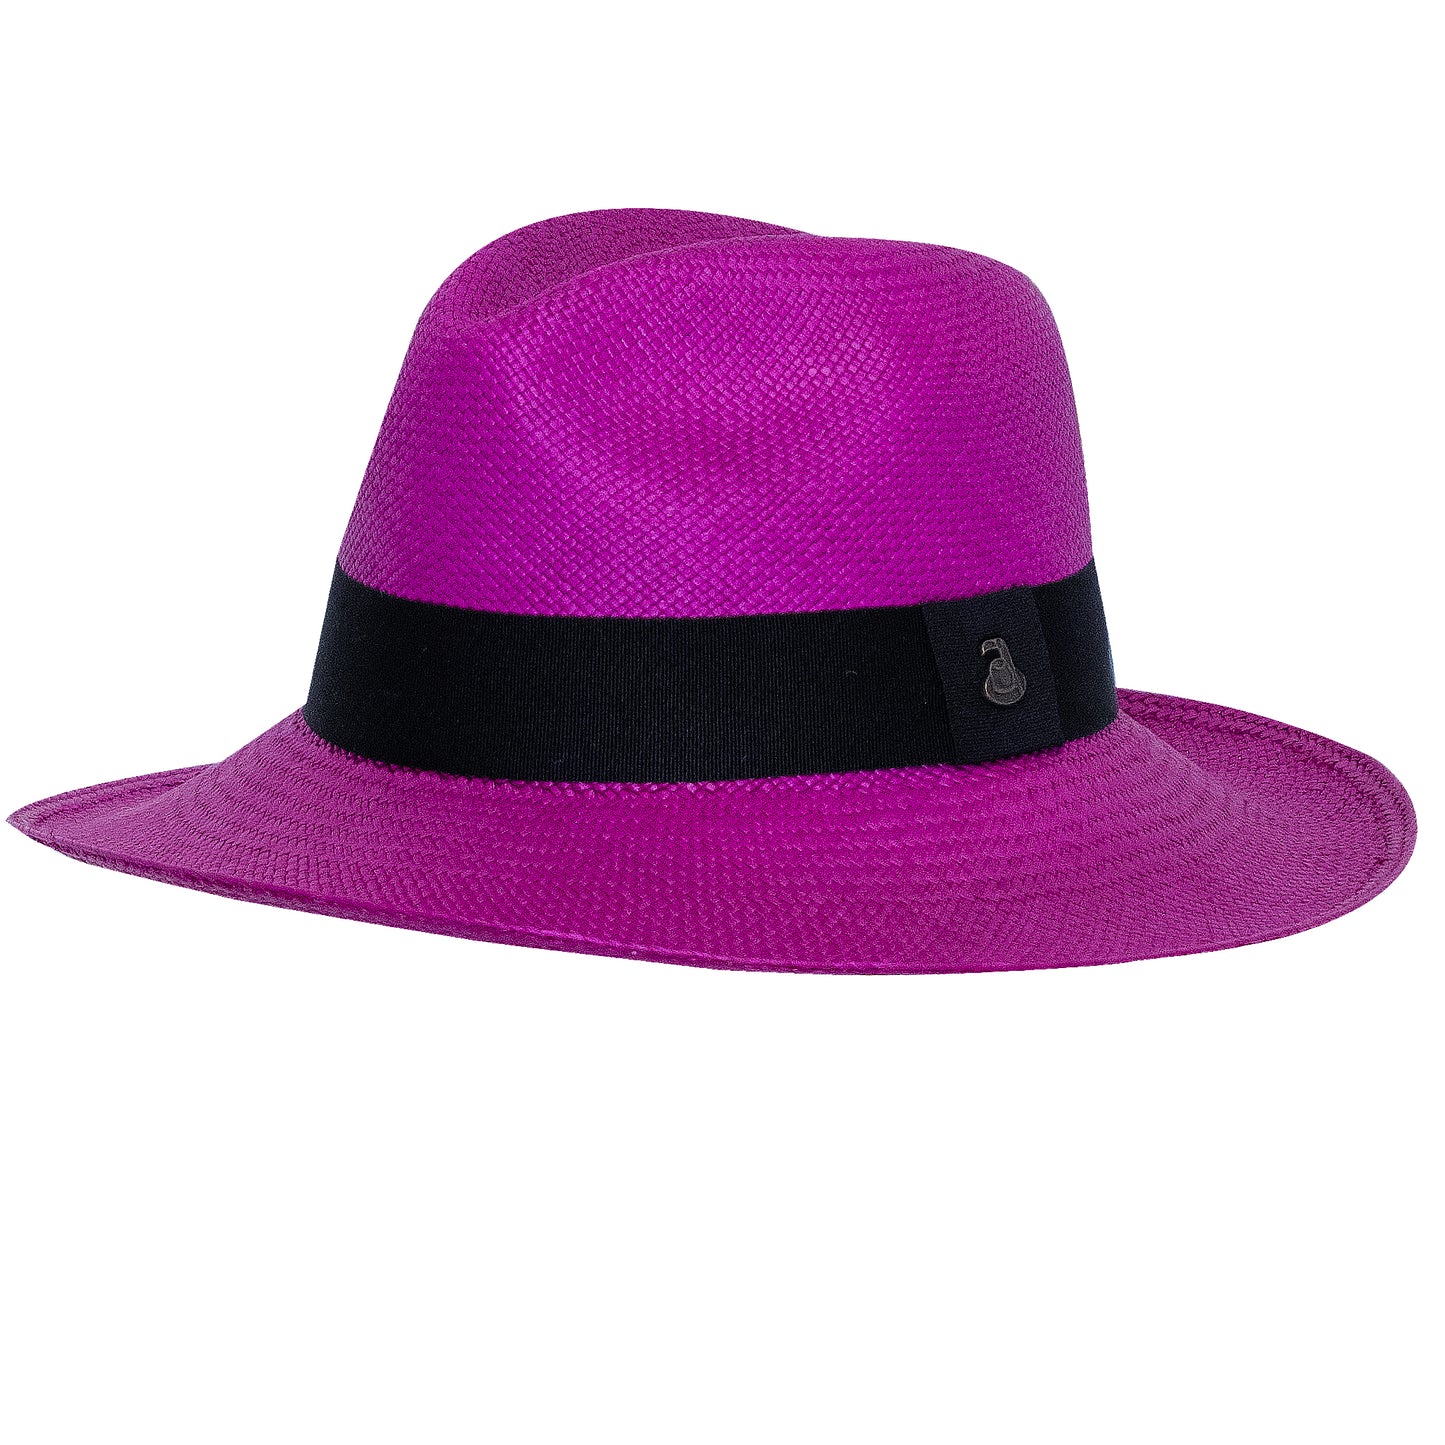 Ladies Panama Hat in Purple